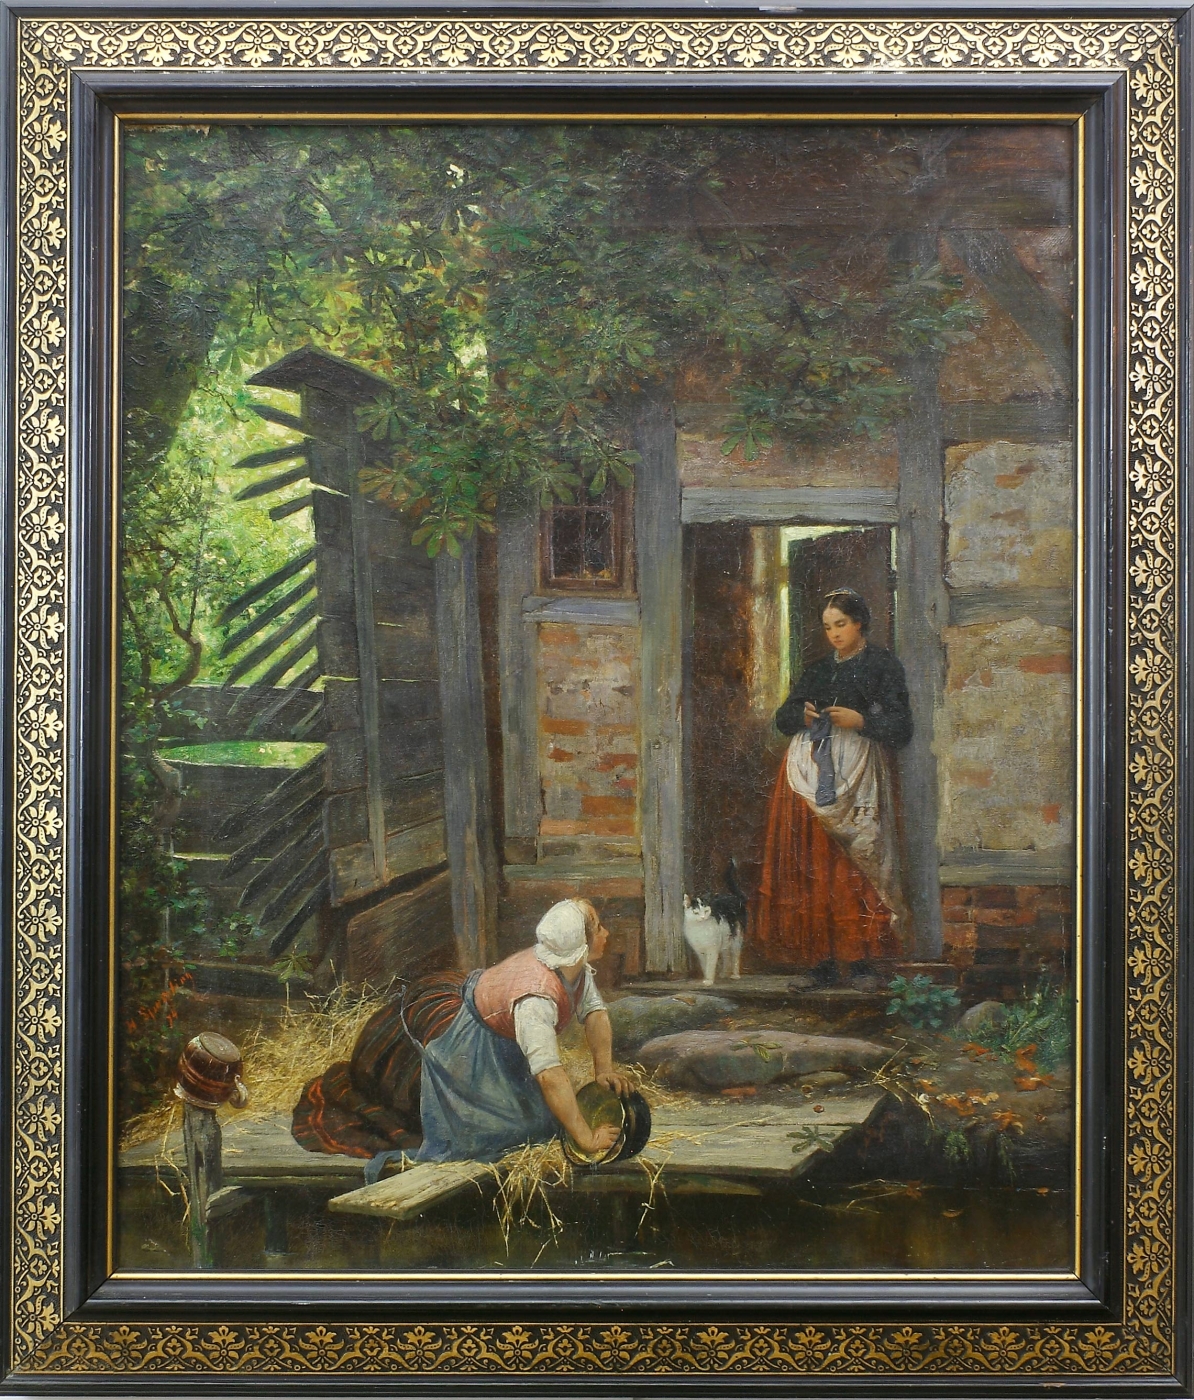 Auktionshaus Quentin Berlin  Gemälde Sperling  Heinrich  Zwei Frauen und Katze bei einem alten Haus. (18)74